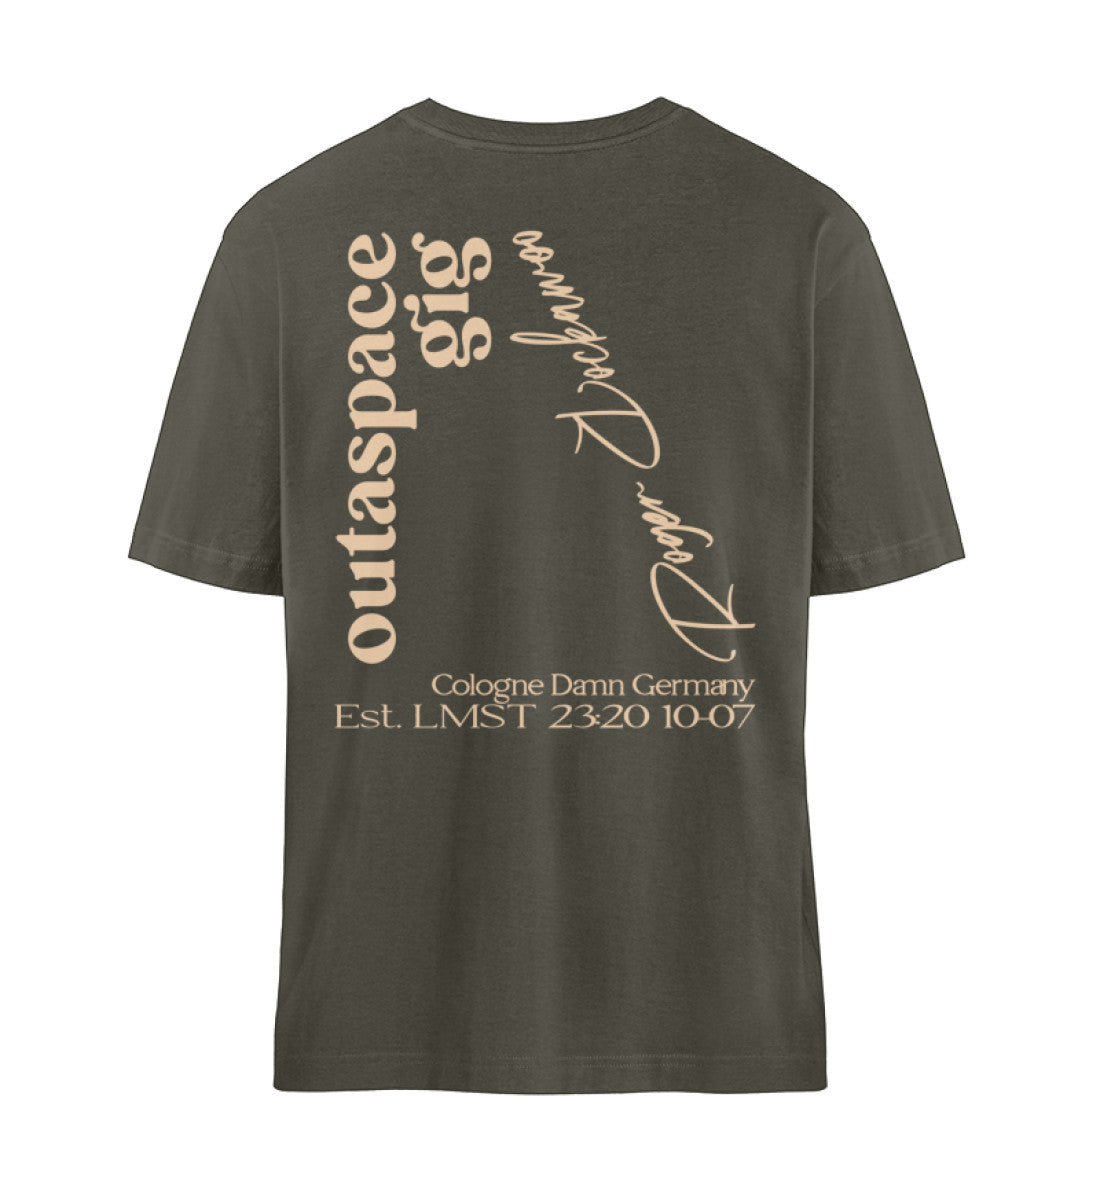 Khaki T-Shirt Unisex Relaxed Fit für Frauen und Männer bedruckt mit dem Design der Roger Rockawoo Kollektion Ufo Alien Guitarist outaspace gig